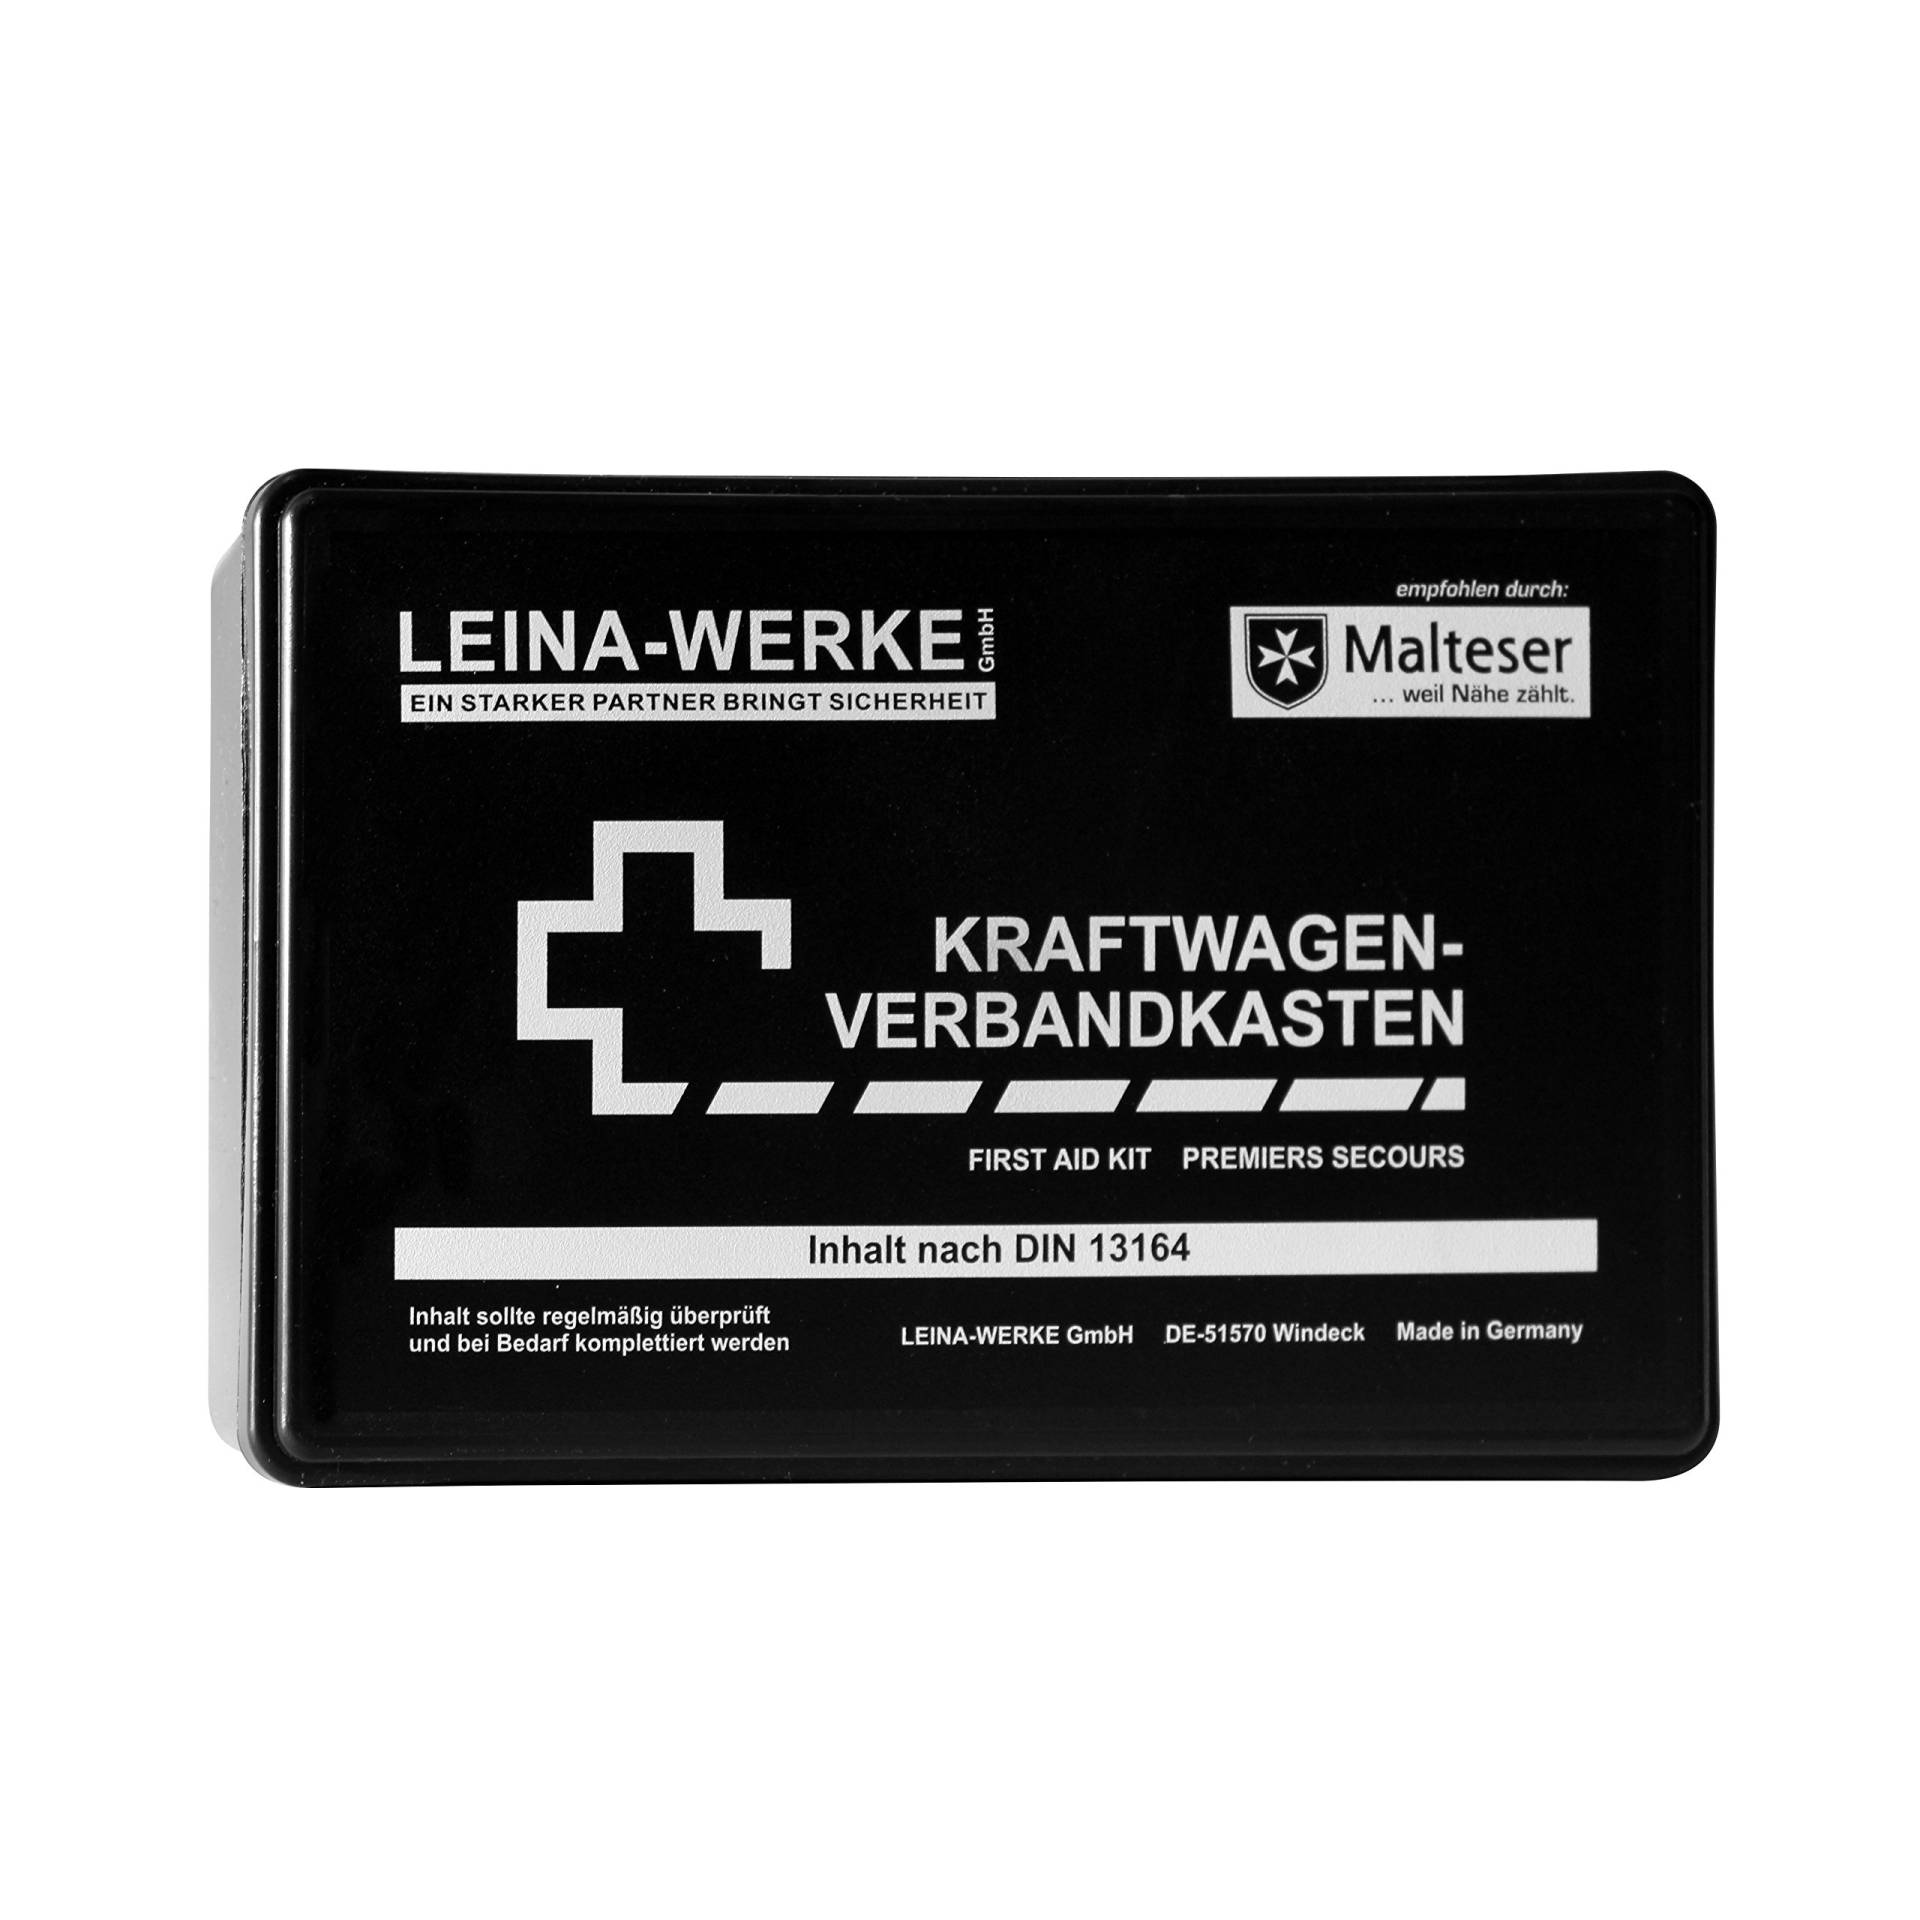 Leina-Werke 10002 KFZ-Verbandkasten Standard, Schwarz/Weiß von LEINA-WERKE